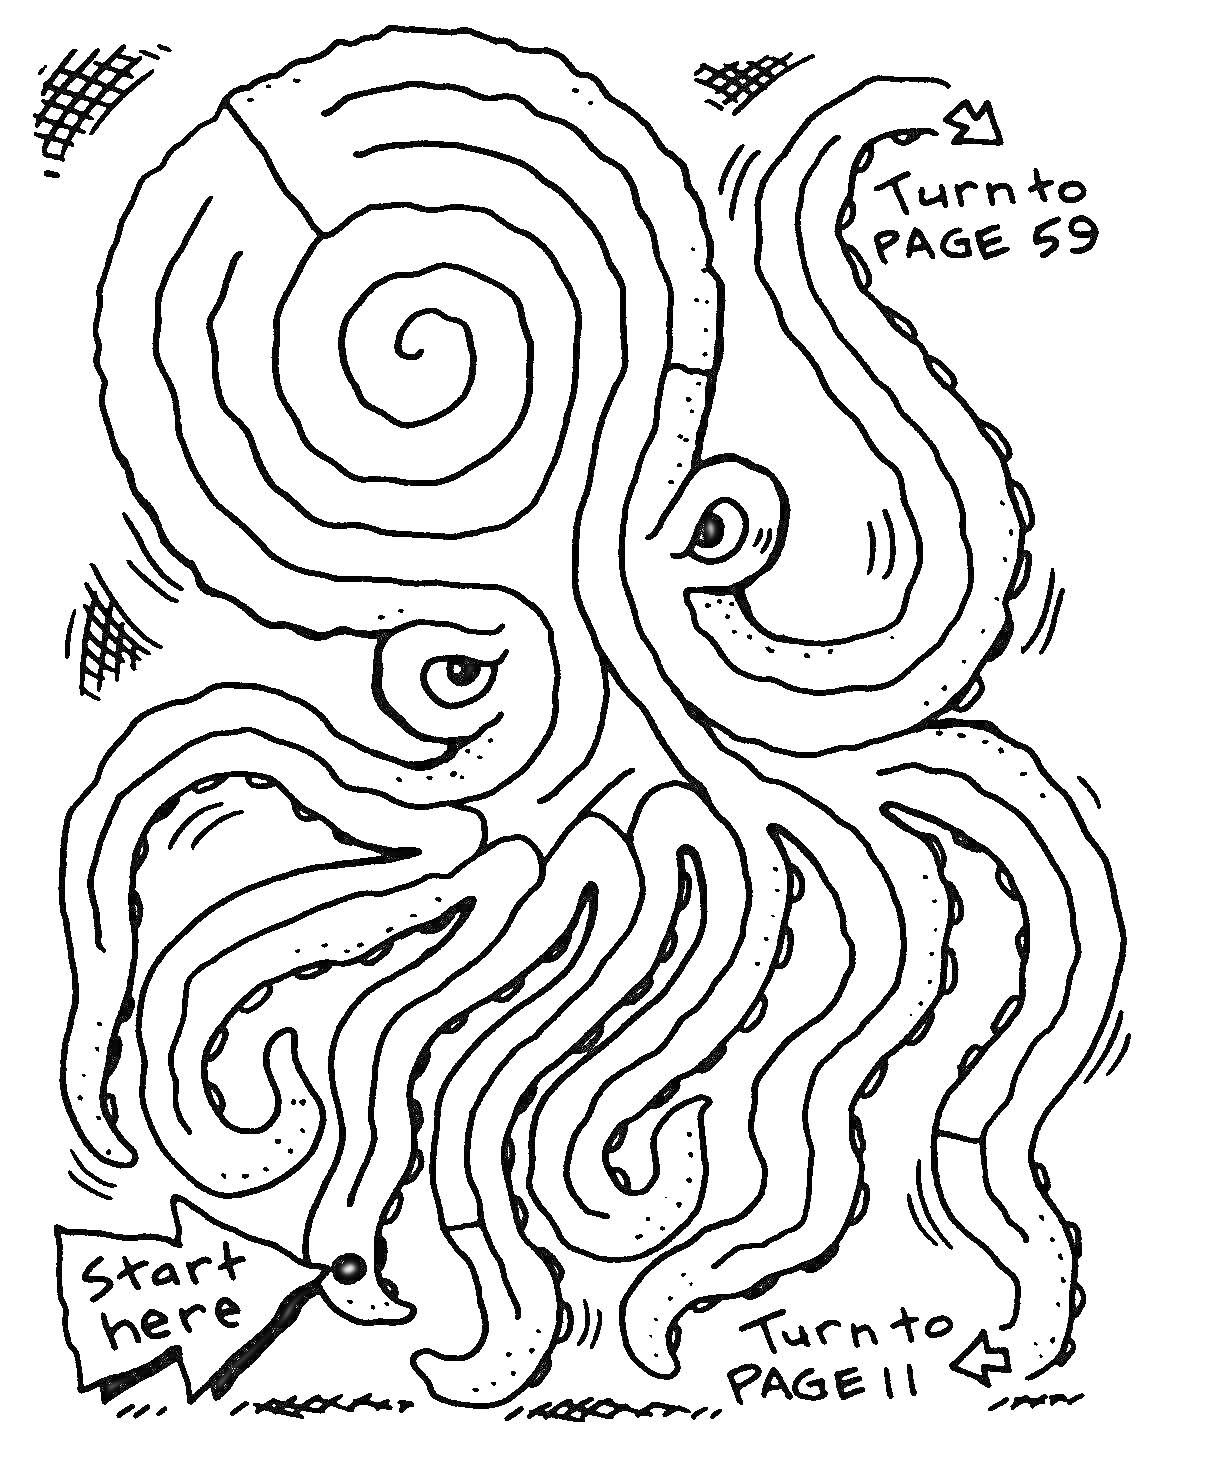  Лабиринт в форме осьминога с указателями на страницы 59 и 11